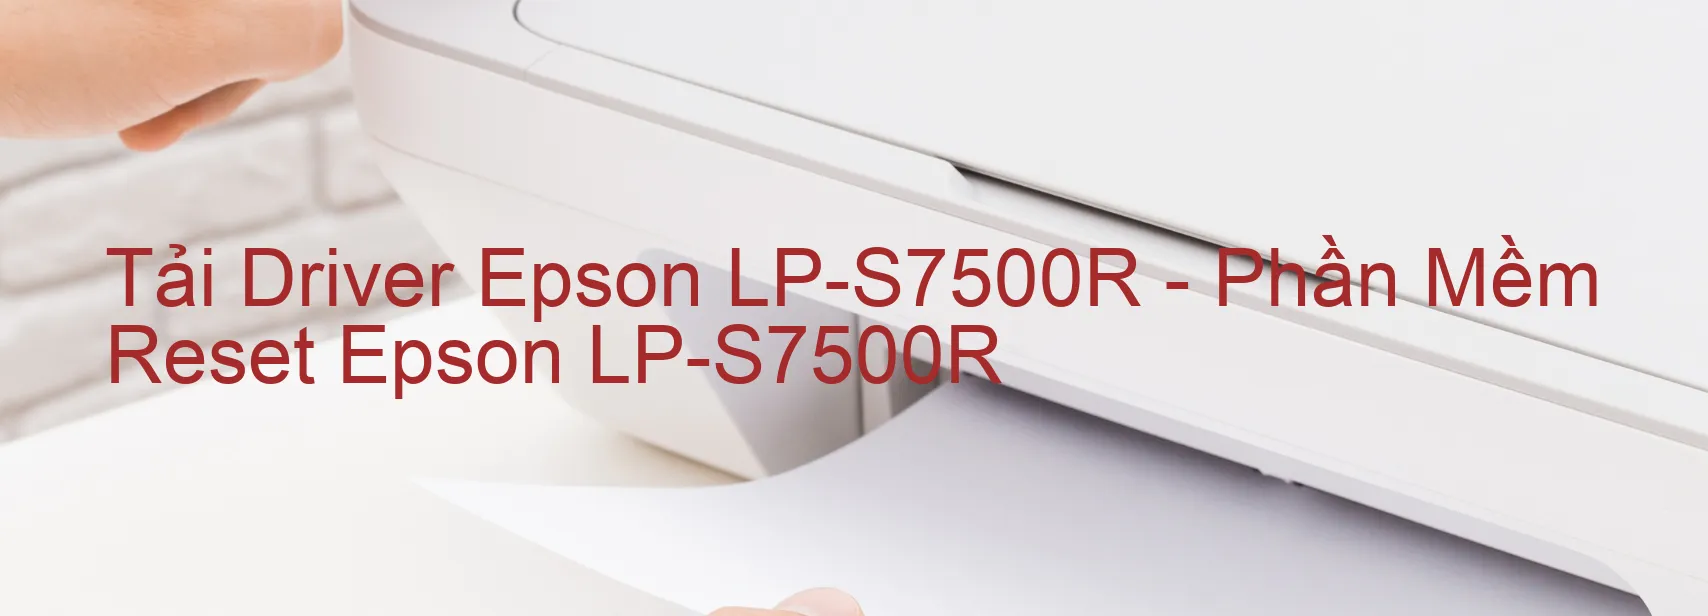 Driver Epson LP-S7500R, Phần Mềm Reset Epson LP-S7500R